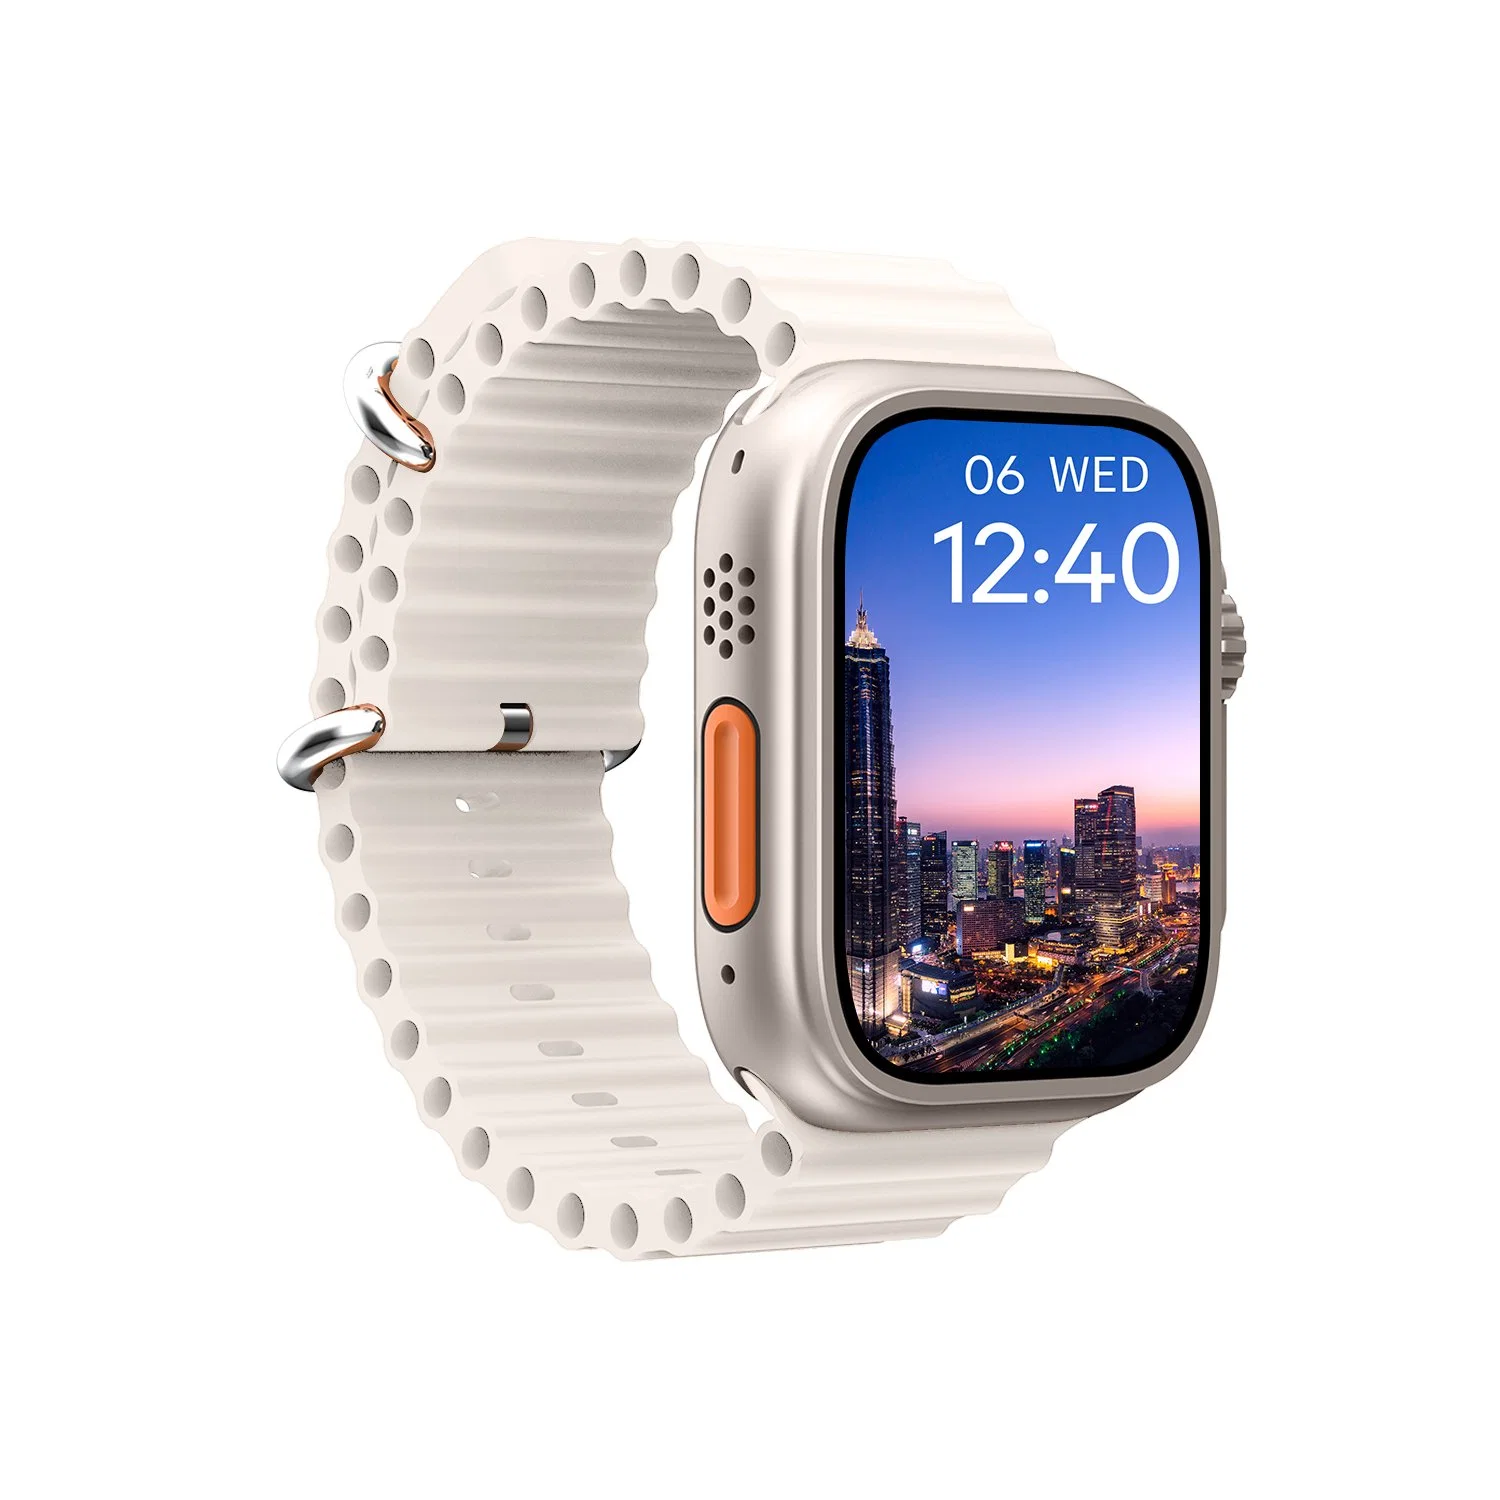 M8 Ultra Max серии 8 Smartwatch 2.02 дюймов большой экран мобильного телефона Montre Reloj Inteligente Smart смотреть